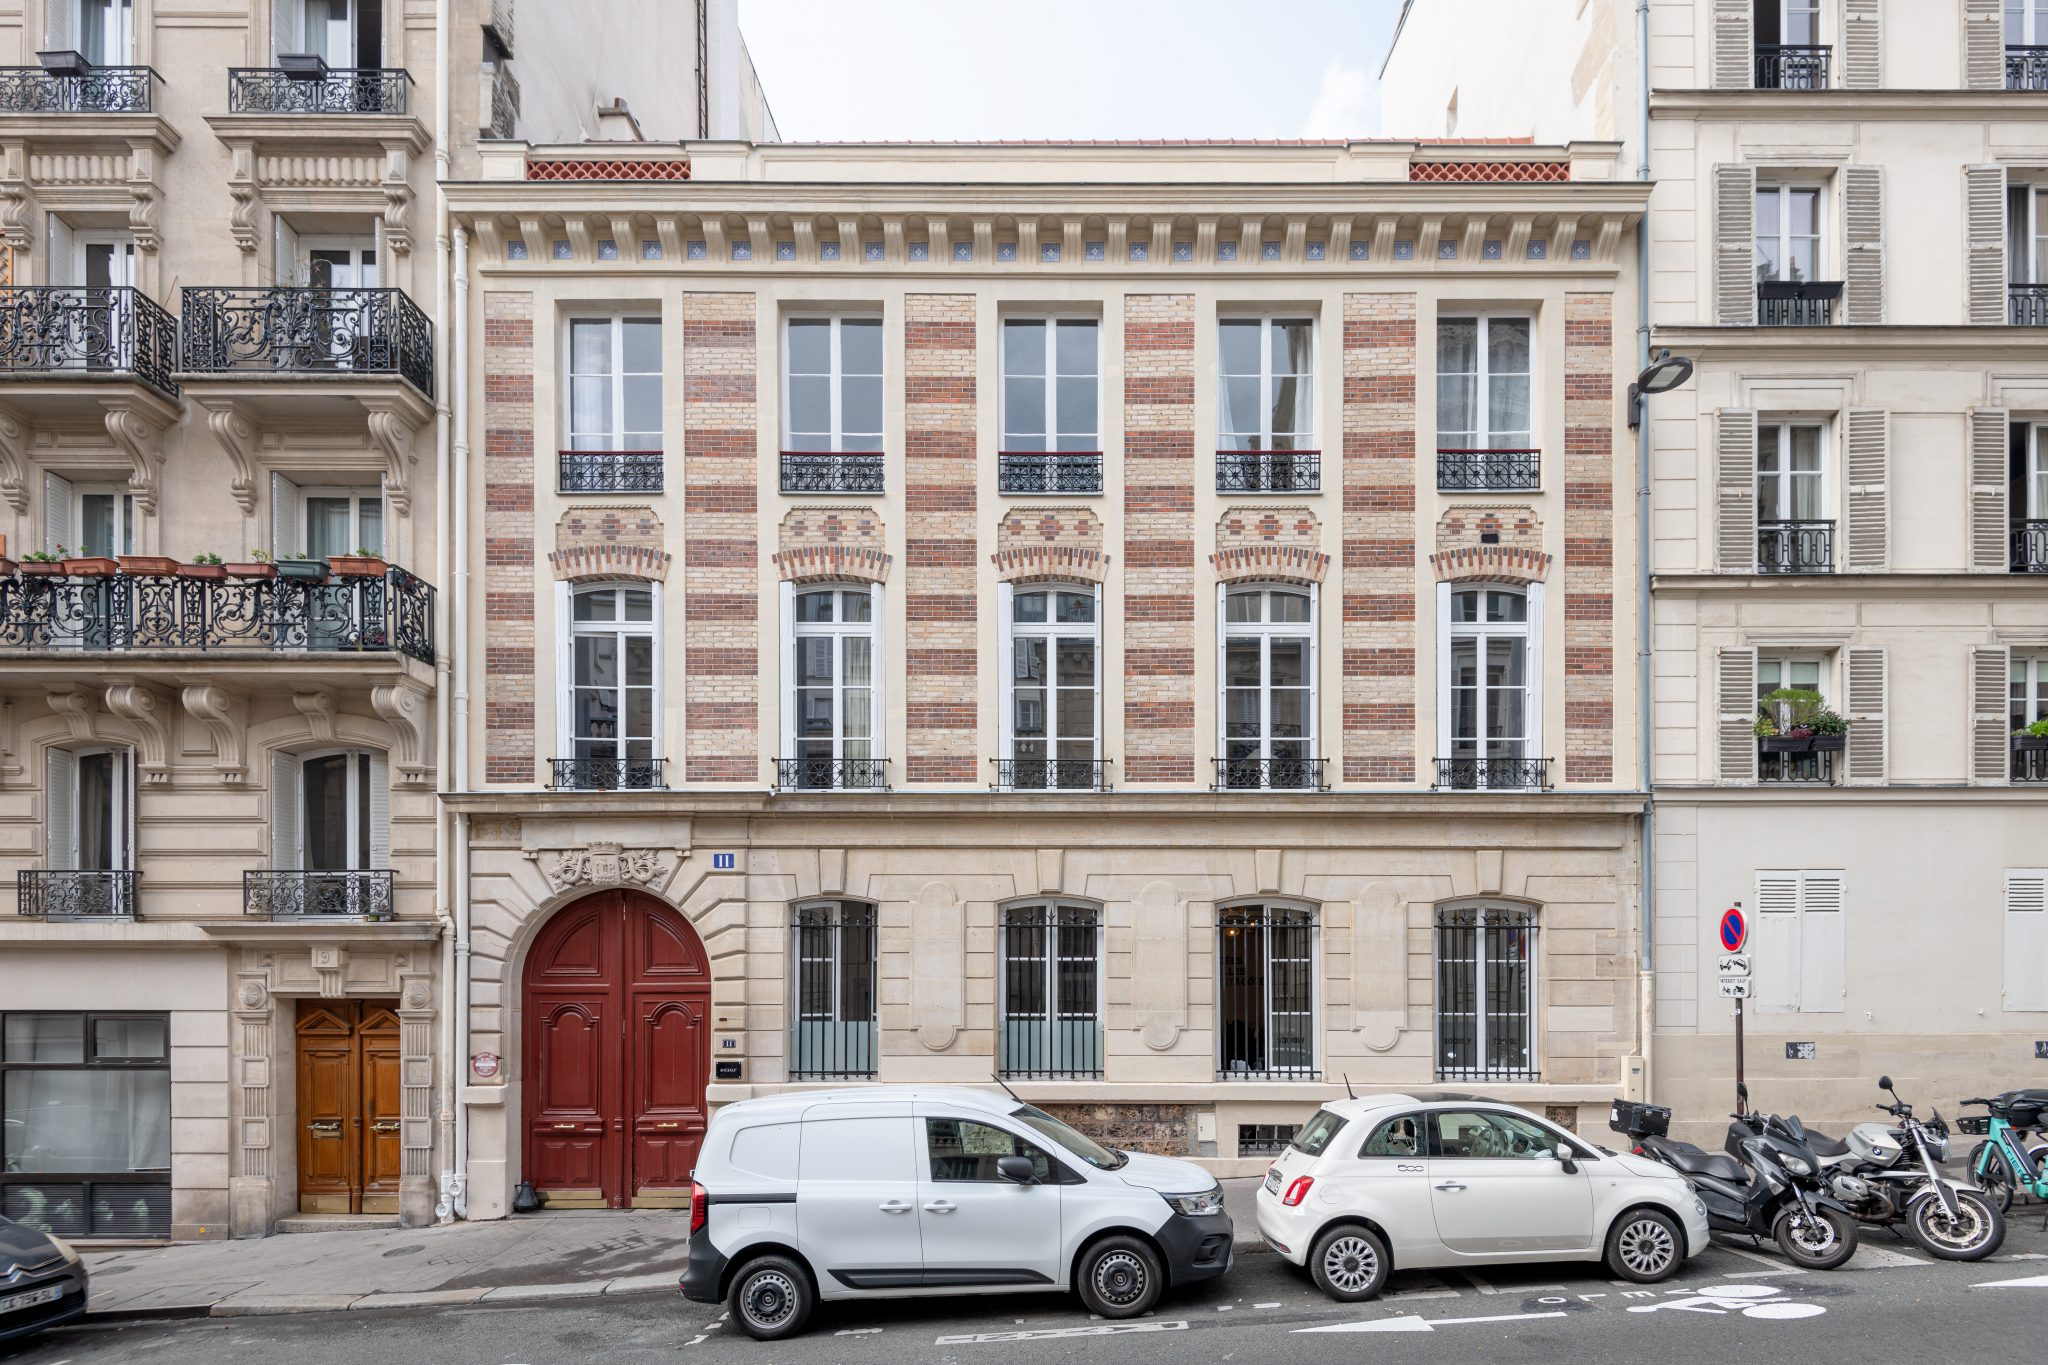 Studio La Boétie Architecte
Paris
Ravalement de façade, rue Milton
© Christophe Caudroy